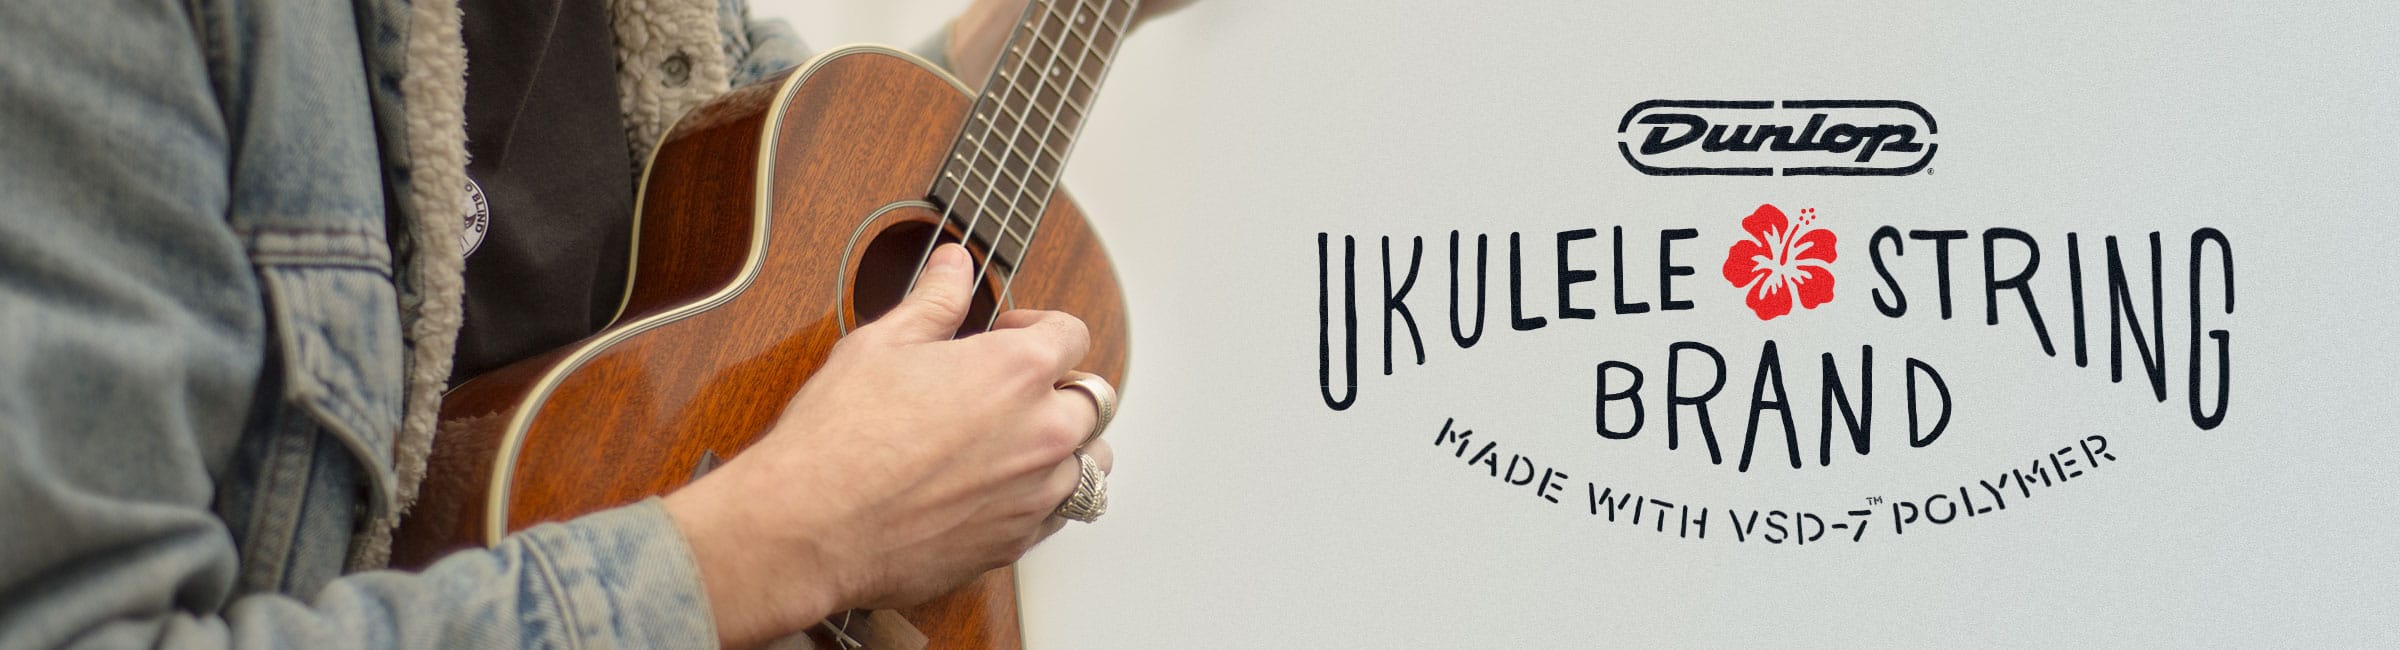 ukulele-banner.jpg